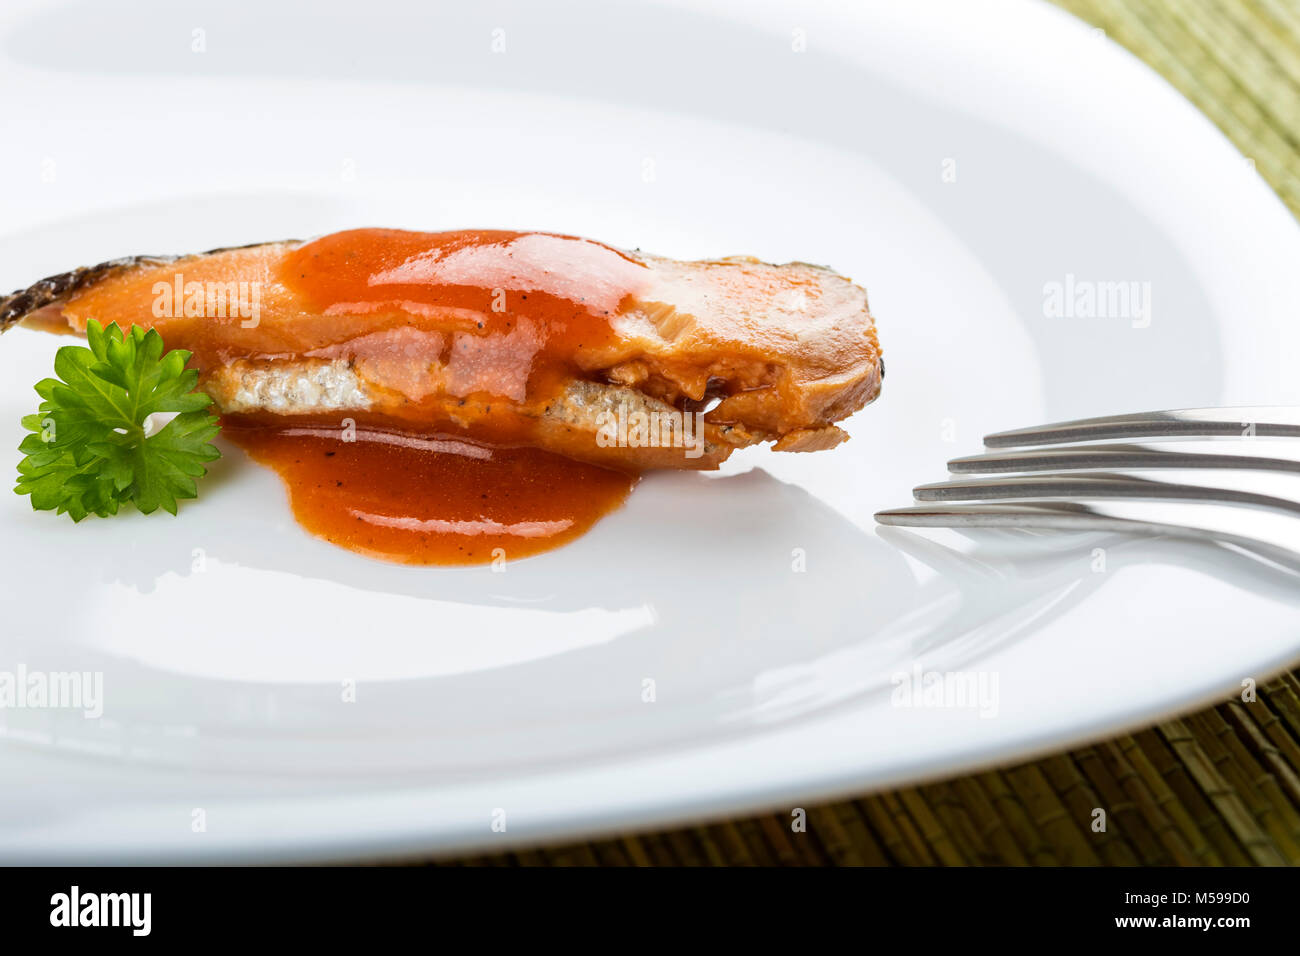 Hareng mariné poisson avec sauce de tomate sur une assiette avec une fourchette Banque D'Images